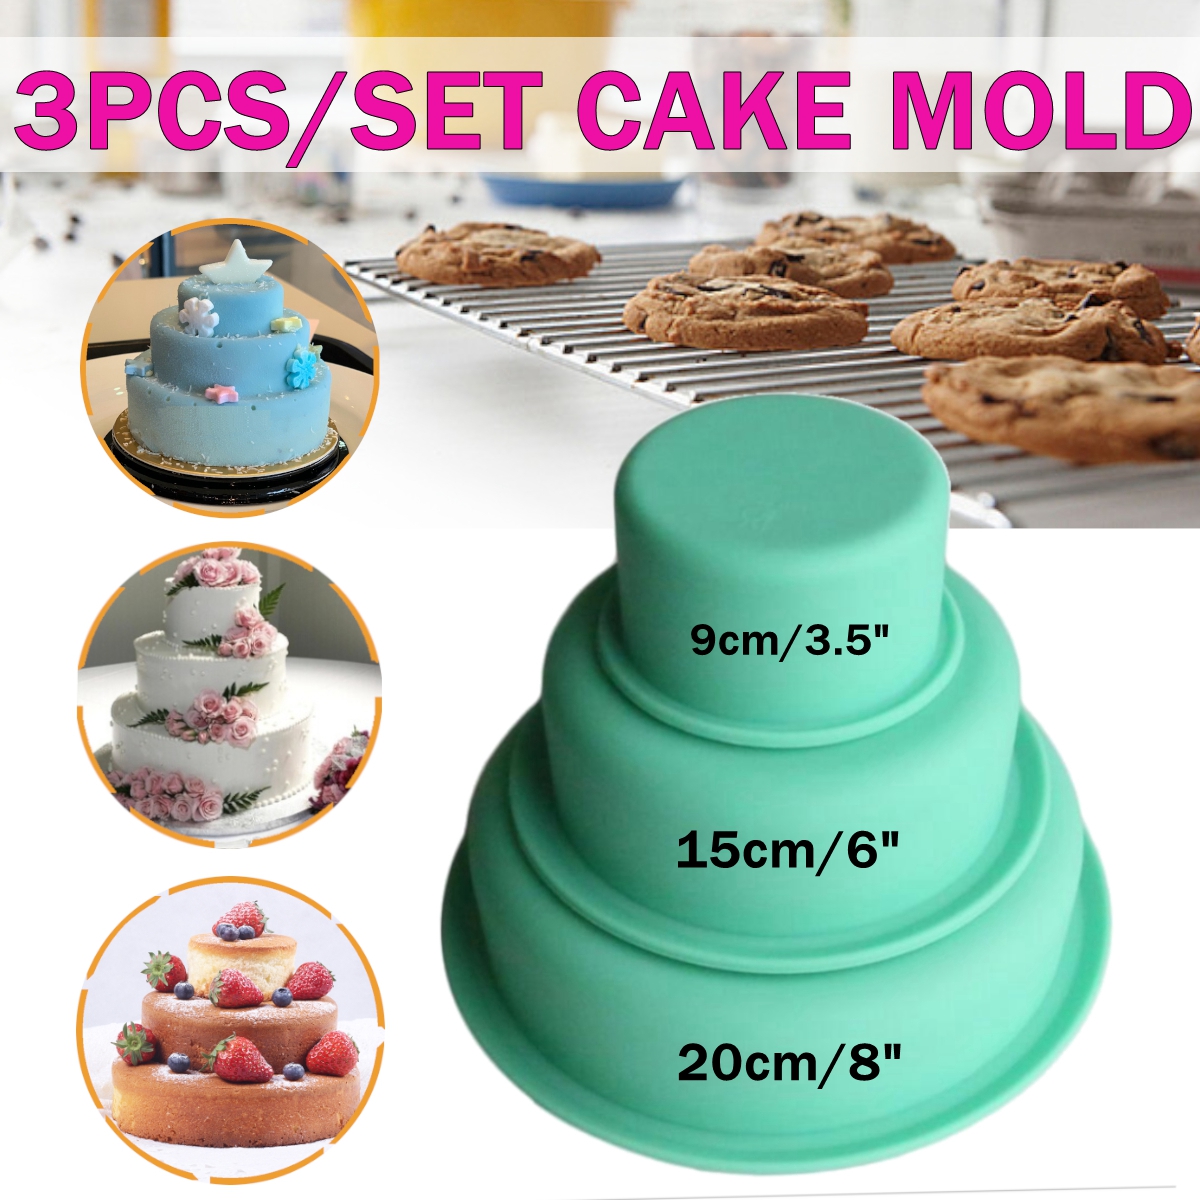 3Pcs Cake Mold Round Silicone Cupcake Baking Set Cake Decorating Pan 